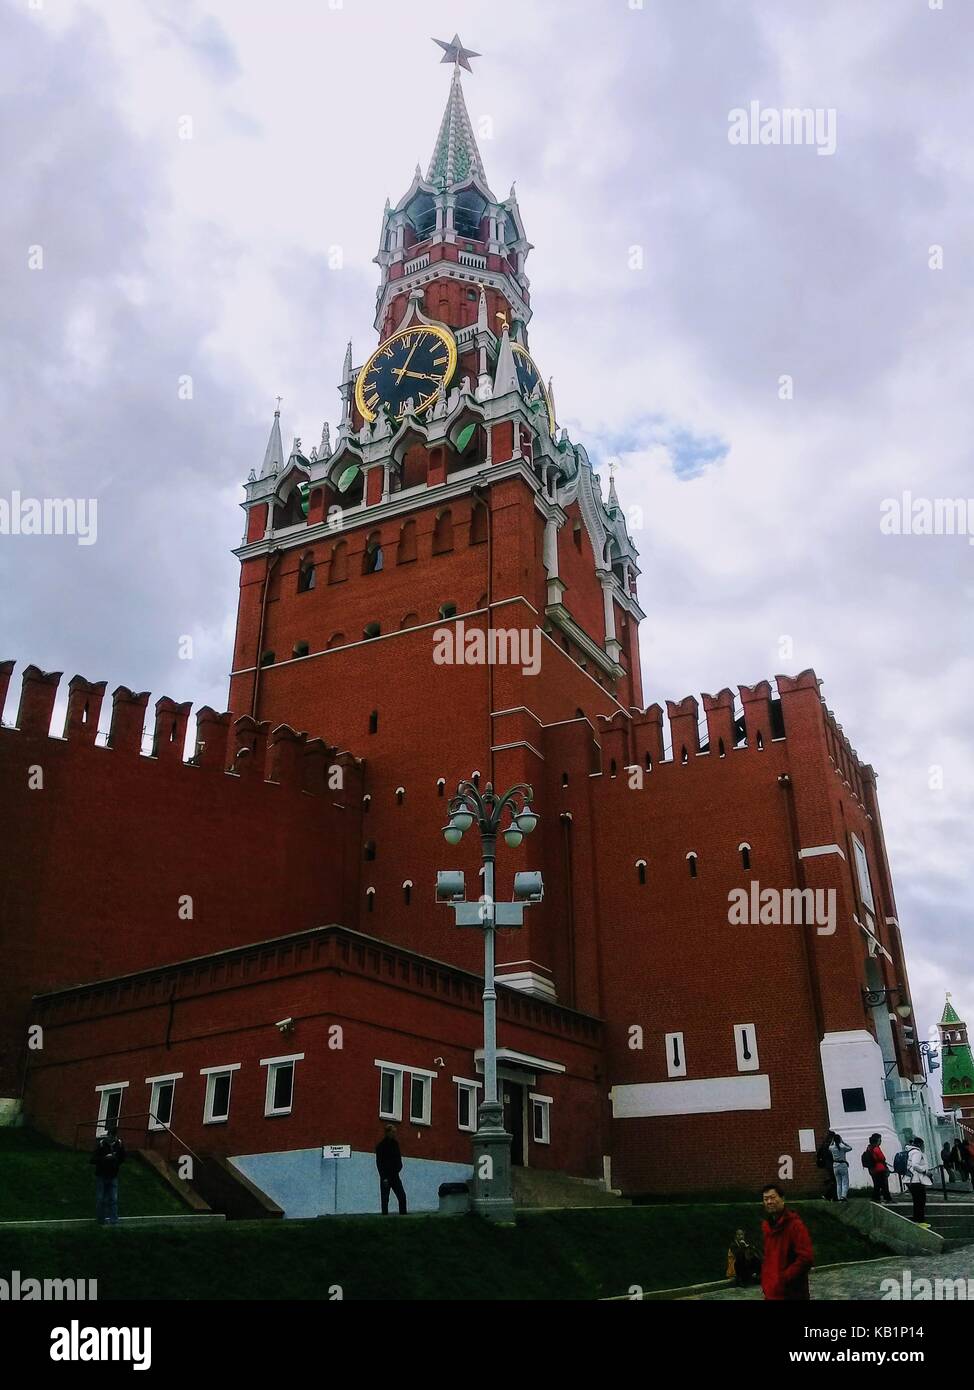 Spasskaja Turm der Kreml in Moskau, auf dem eine riesige Zifferblatt installiert ist. Stockfoto